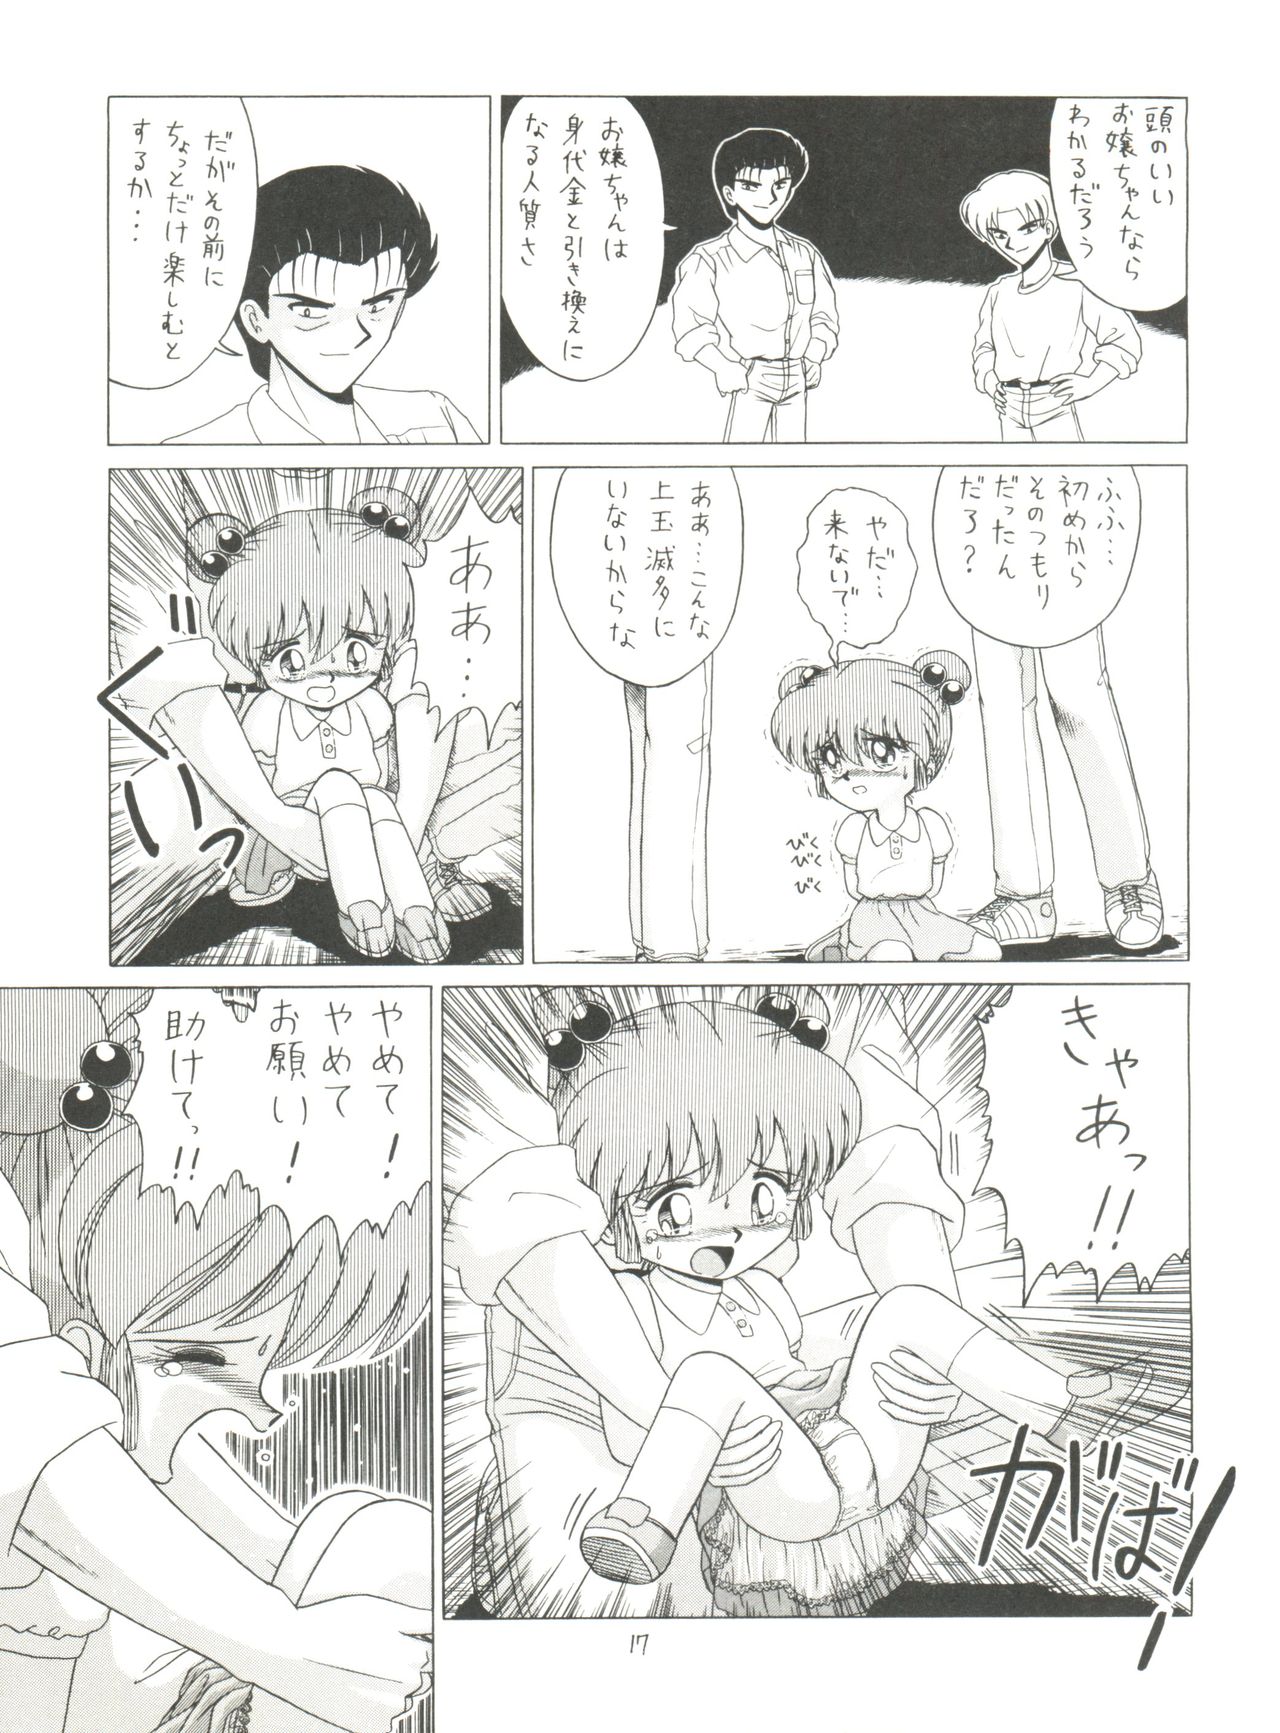 [Momo no Tsubomi (Various)] Lolikko LOVE 4 (Various) page 17 full